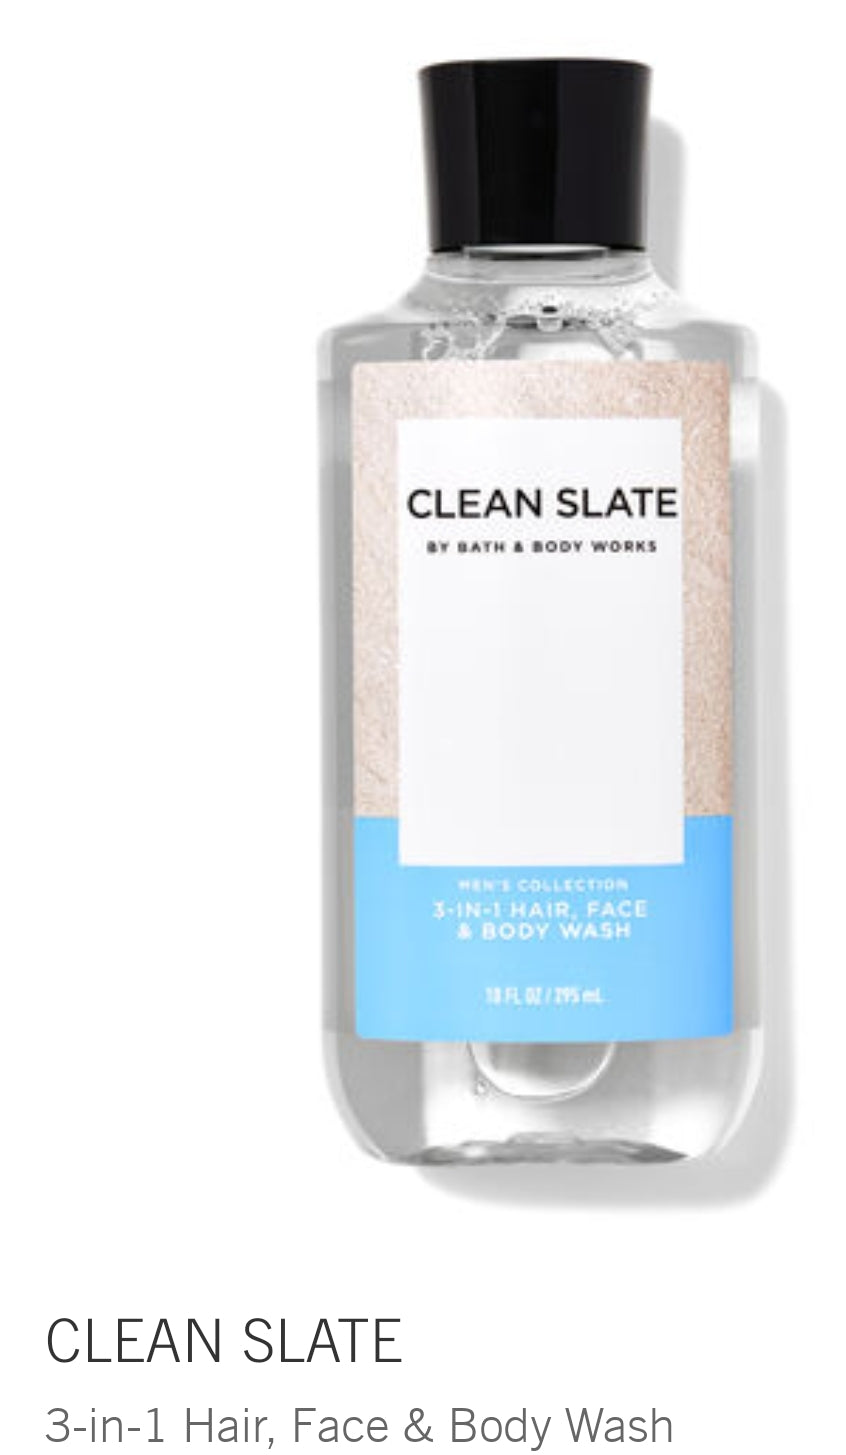 Clean slate body wash